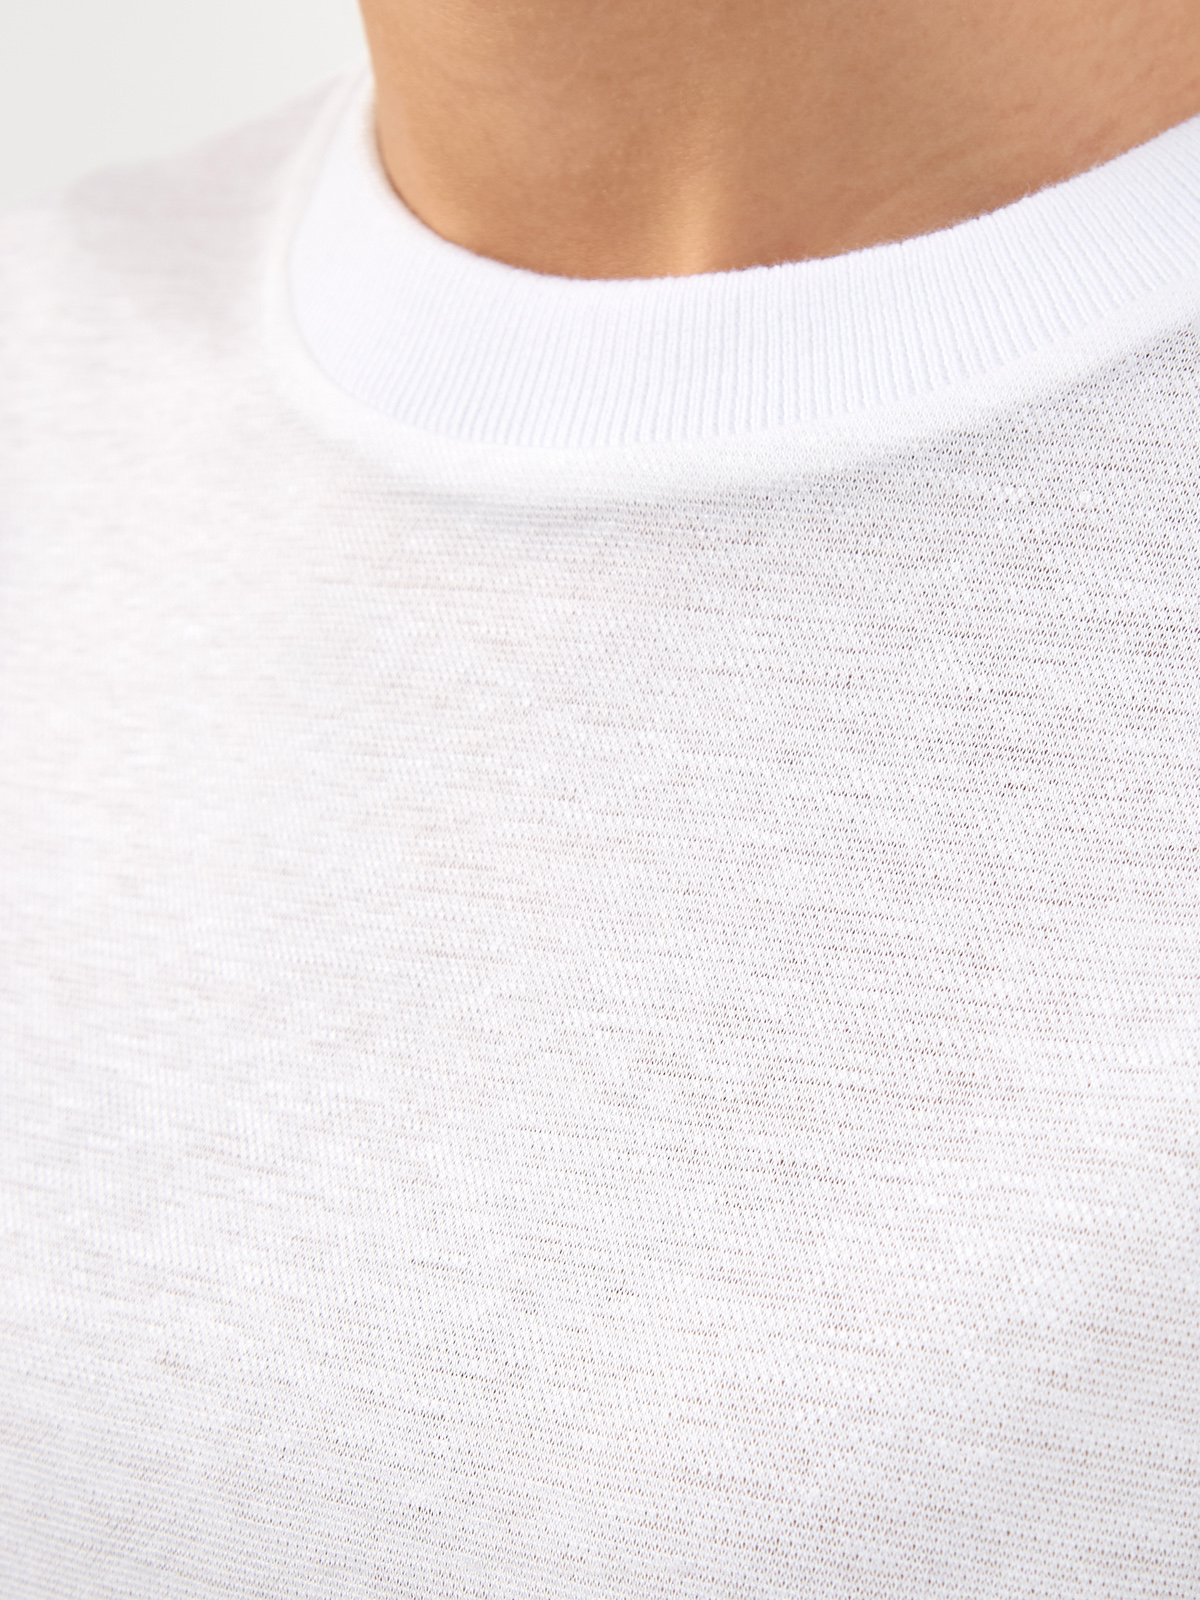 Свободная футболка из хлопка и льна с трикотажным воротом PESERICO, цвет белый, размер 38;40;42;44;48 - фото 5